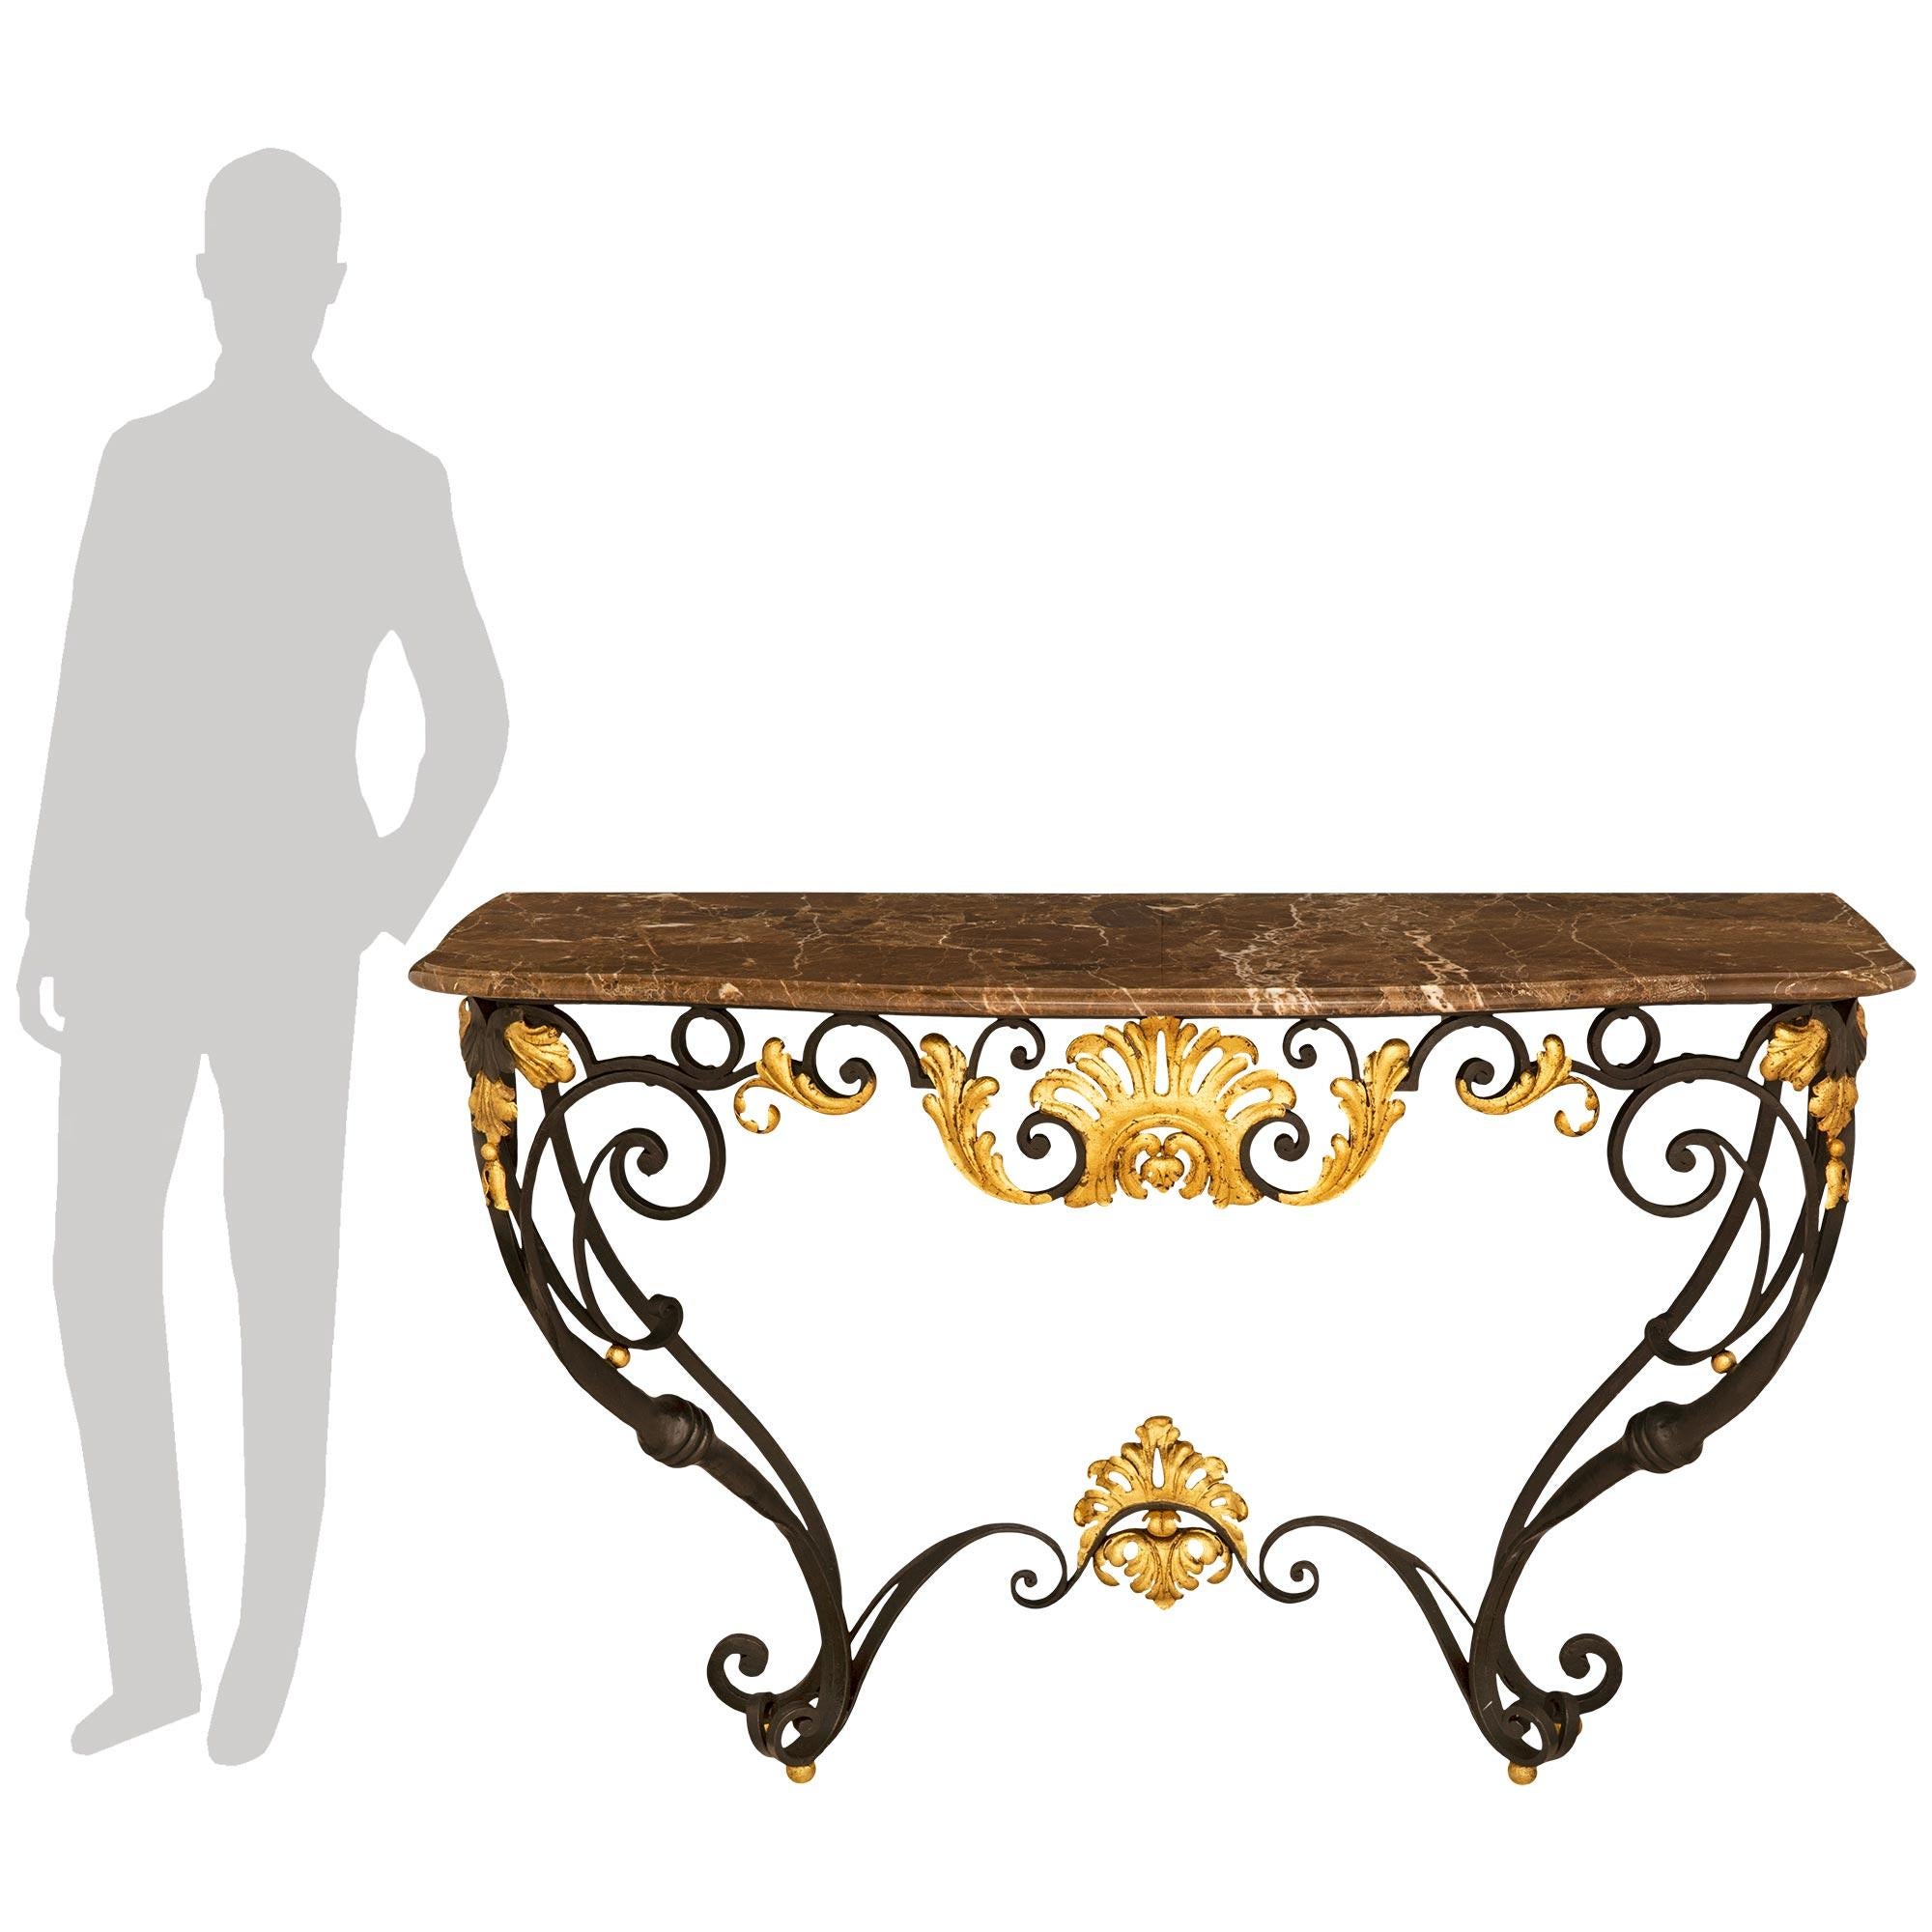 



Belle console française de la fin du XIXe siècle de style Louis XV en fer forgé, métal doré et marbre. La console est surélevée par des pieds à volutes au-dessus des pieds boules dorés et est reliée par un châssis à volutes présentant une